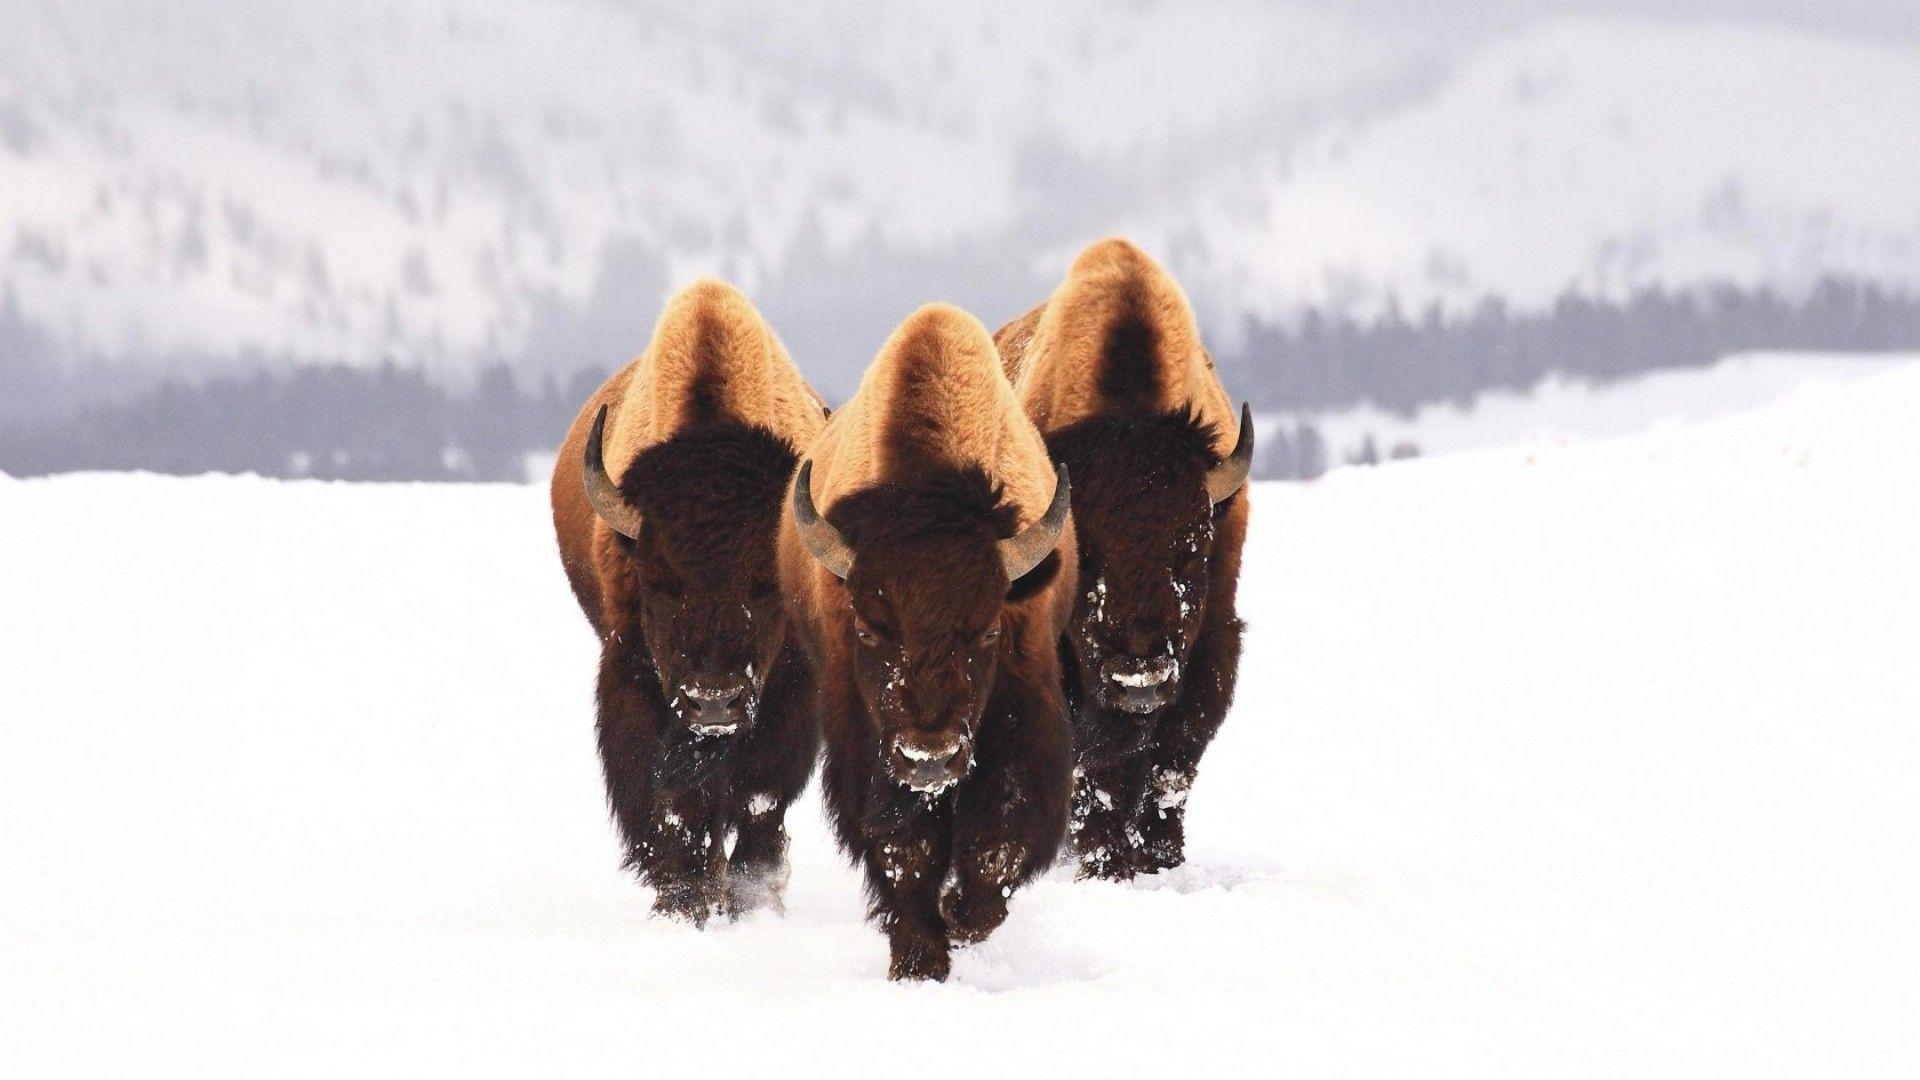 HD Wallpaper: 1920x1080 Animals bison snow animals winter